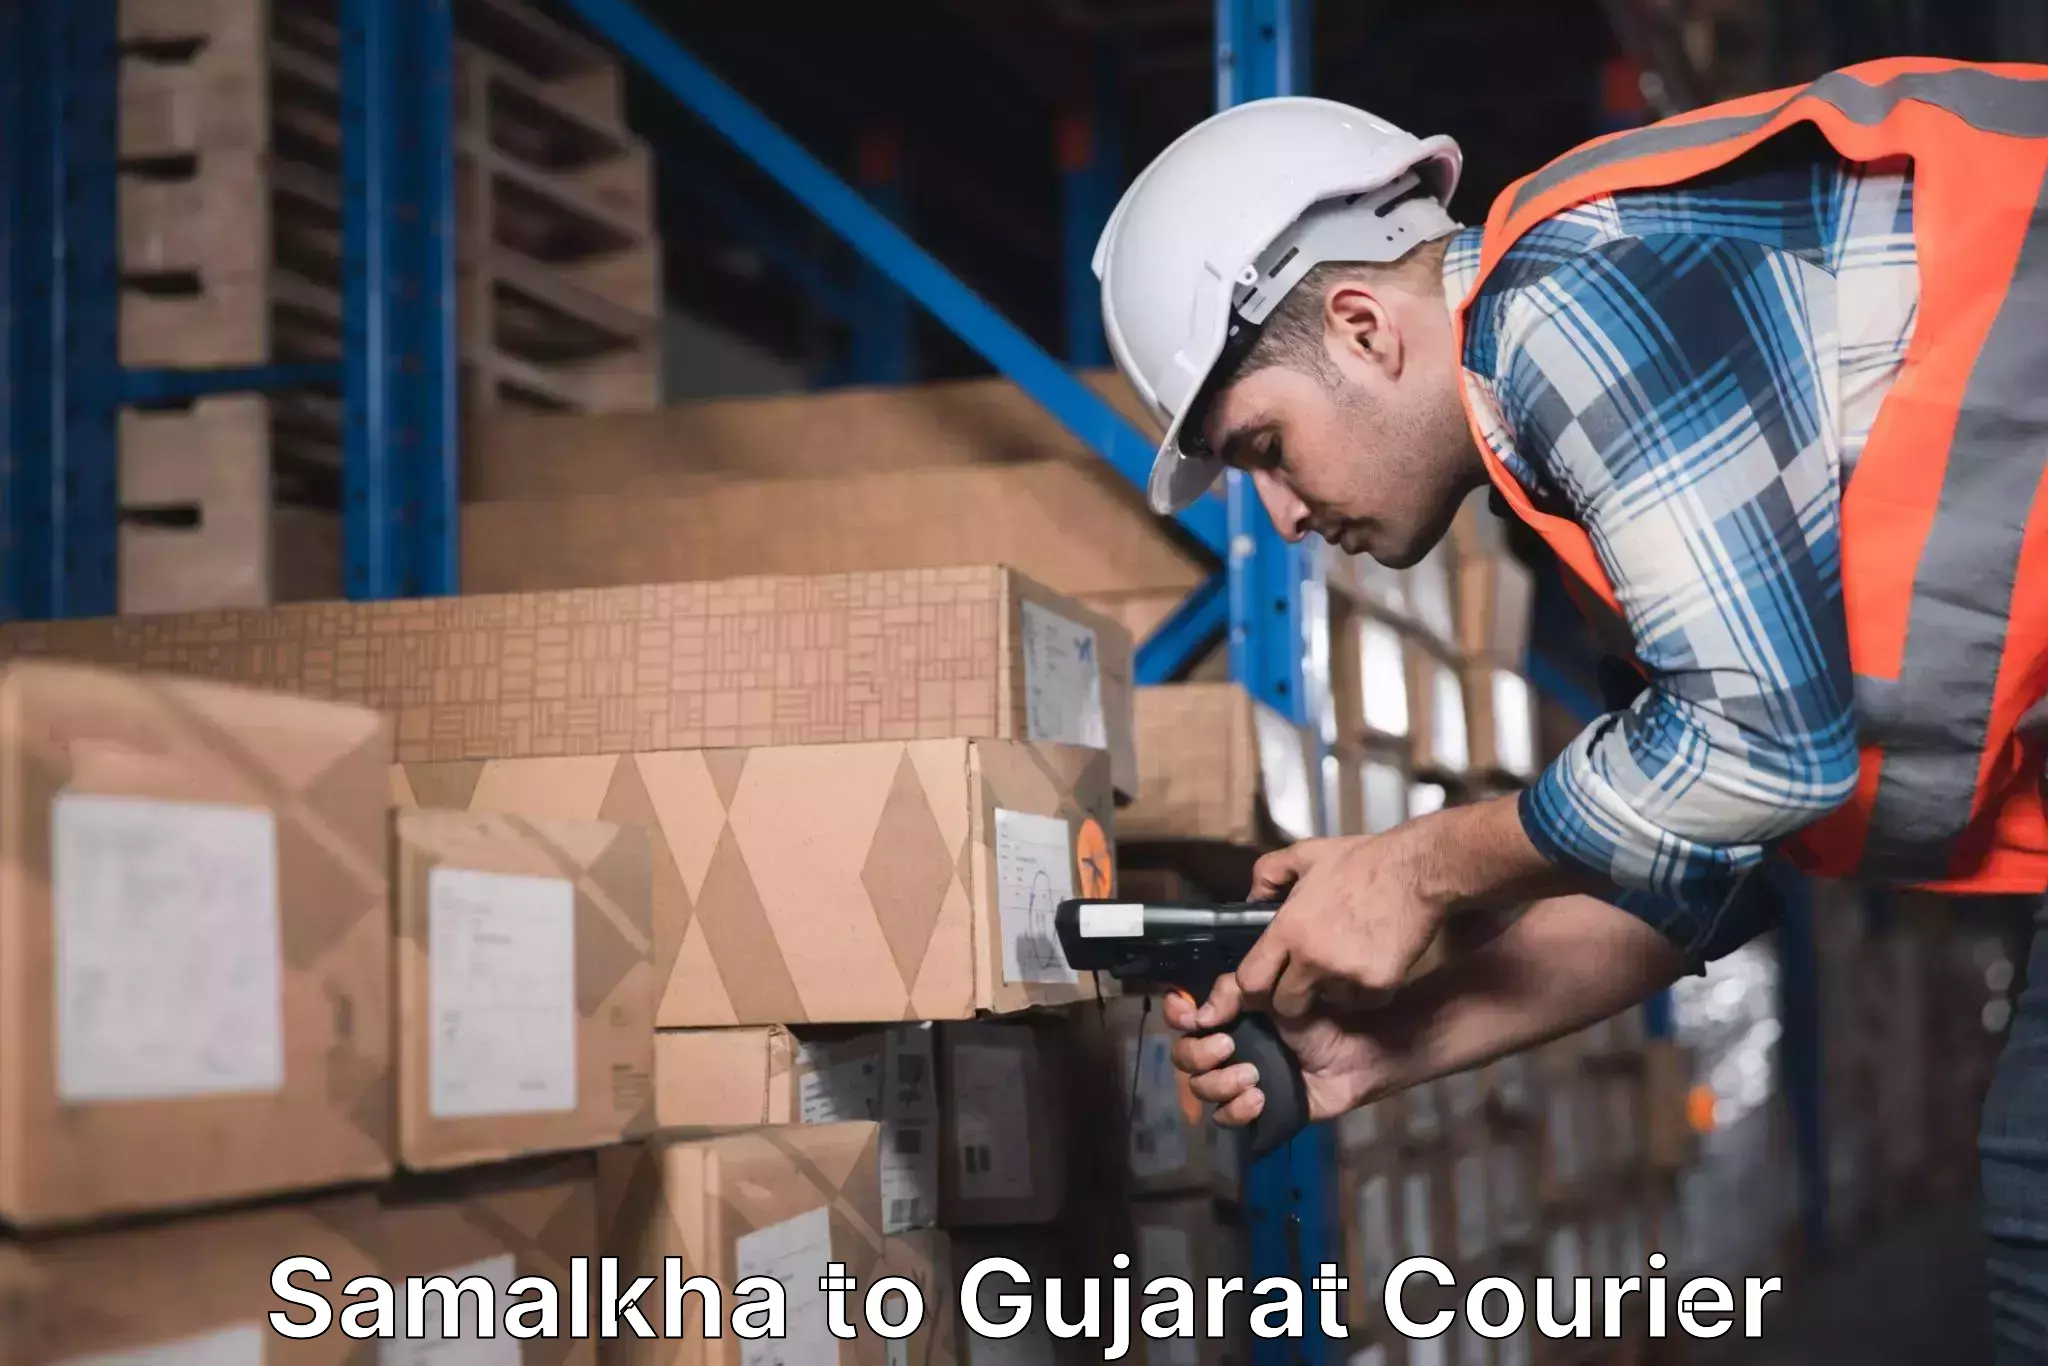 Courier service comparison Samalkha to Sabarkantha